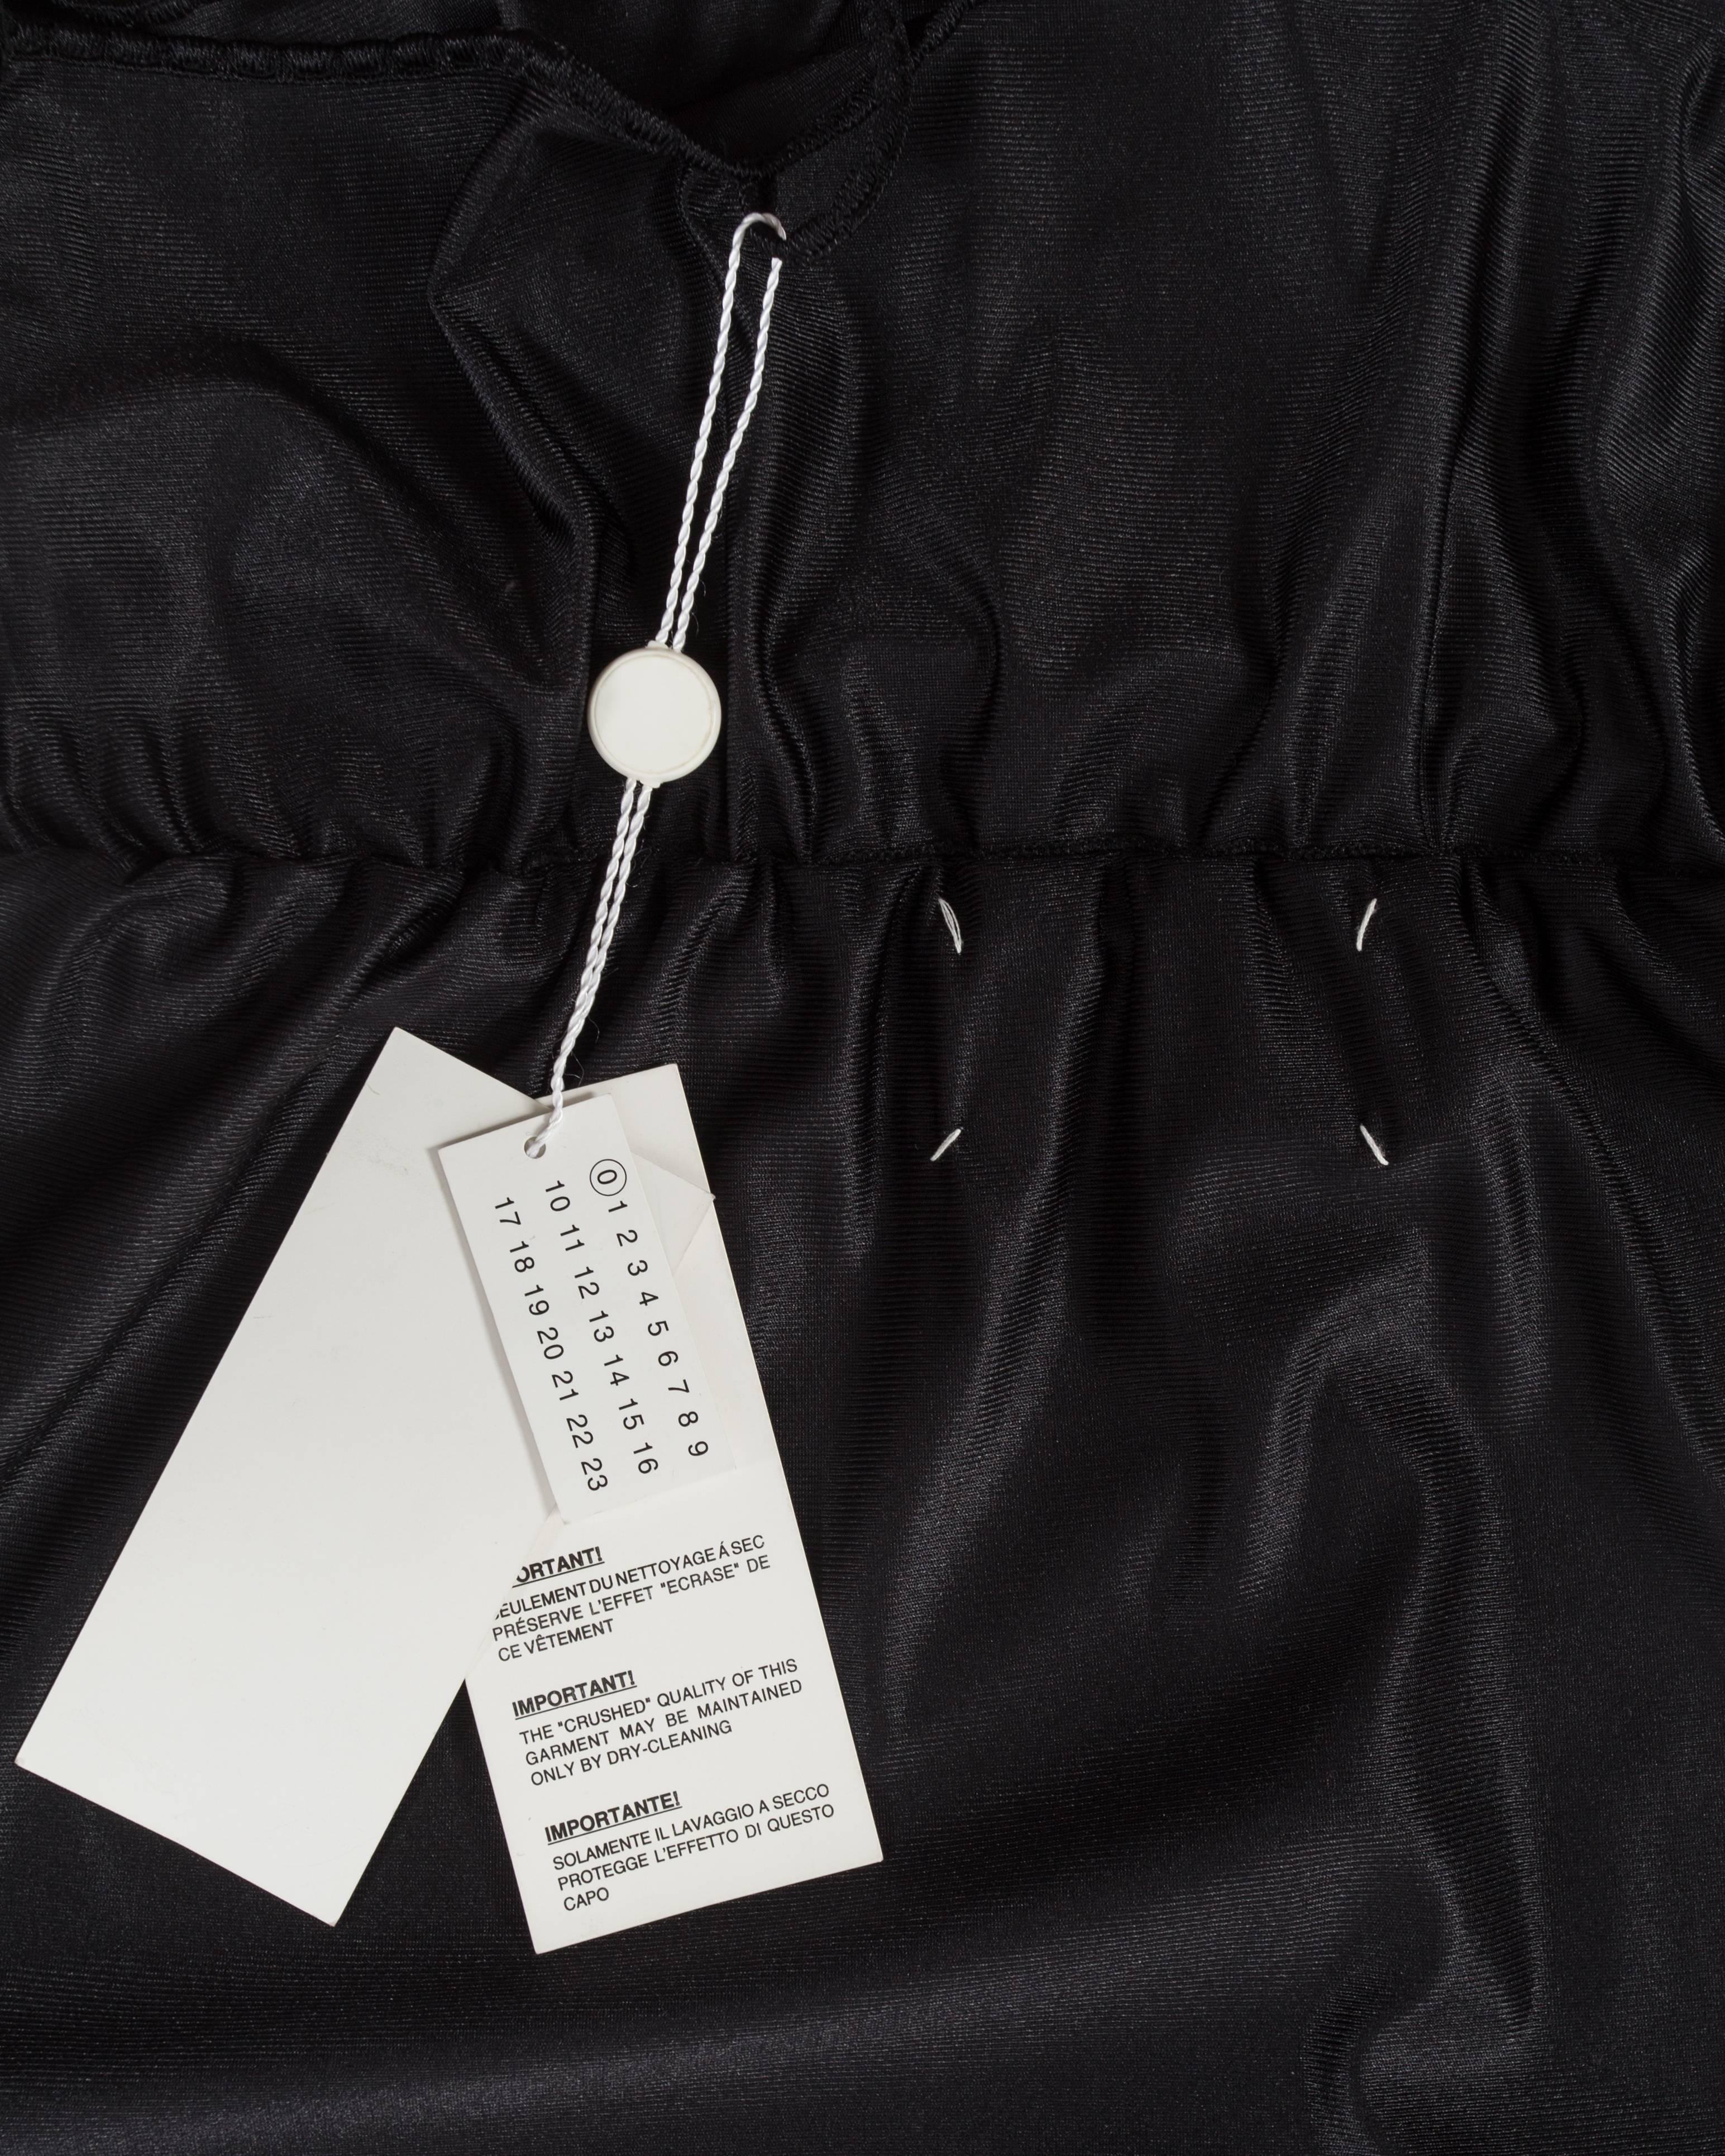 Women's Martin Margiela black artisanal slip dress reconstructed into a skirt, ss 2003 For Sale